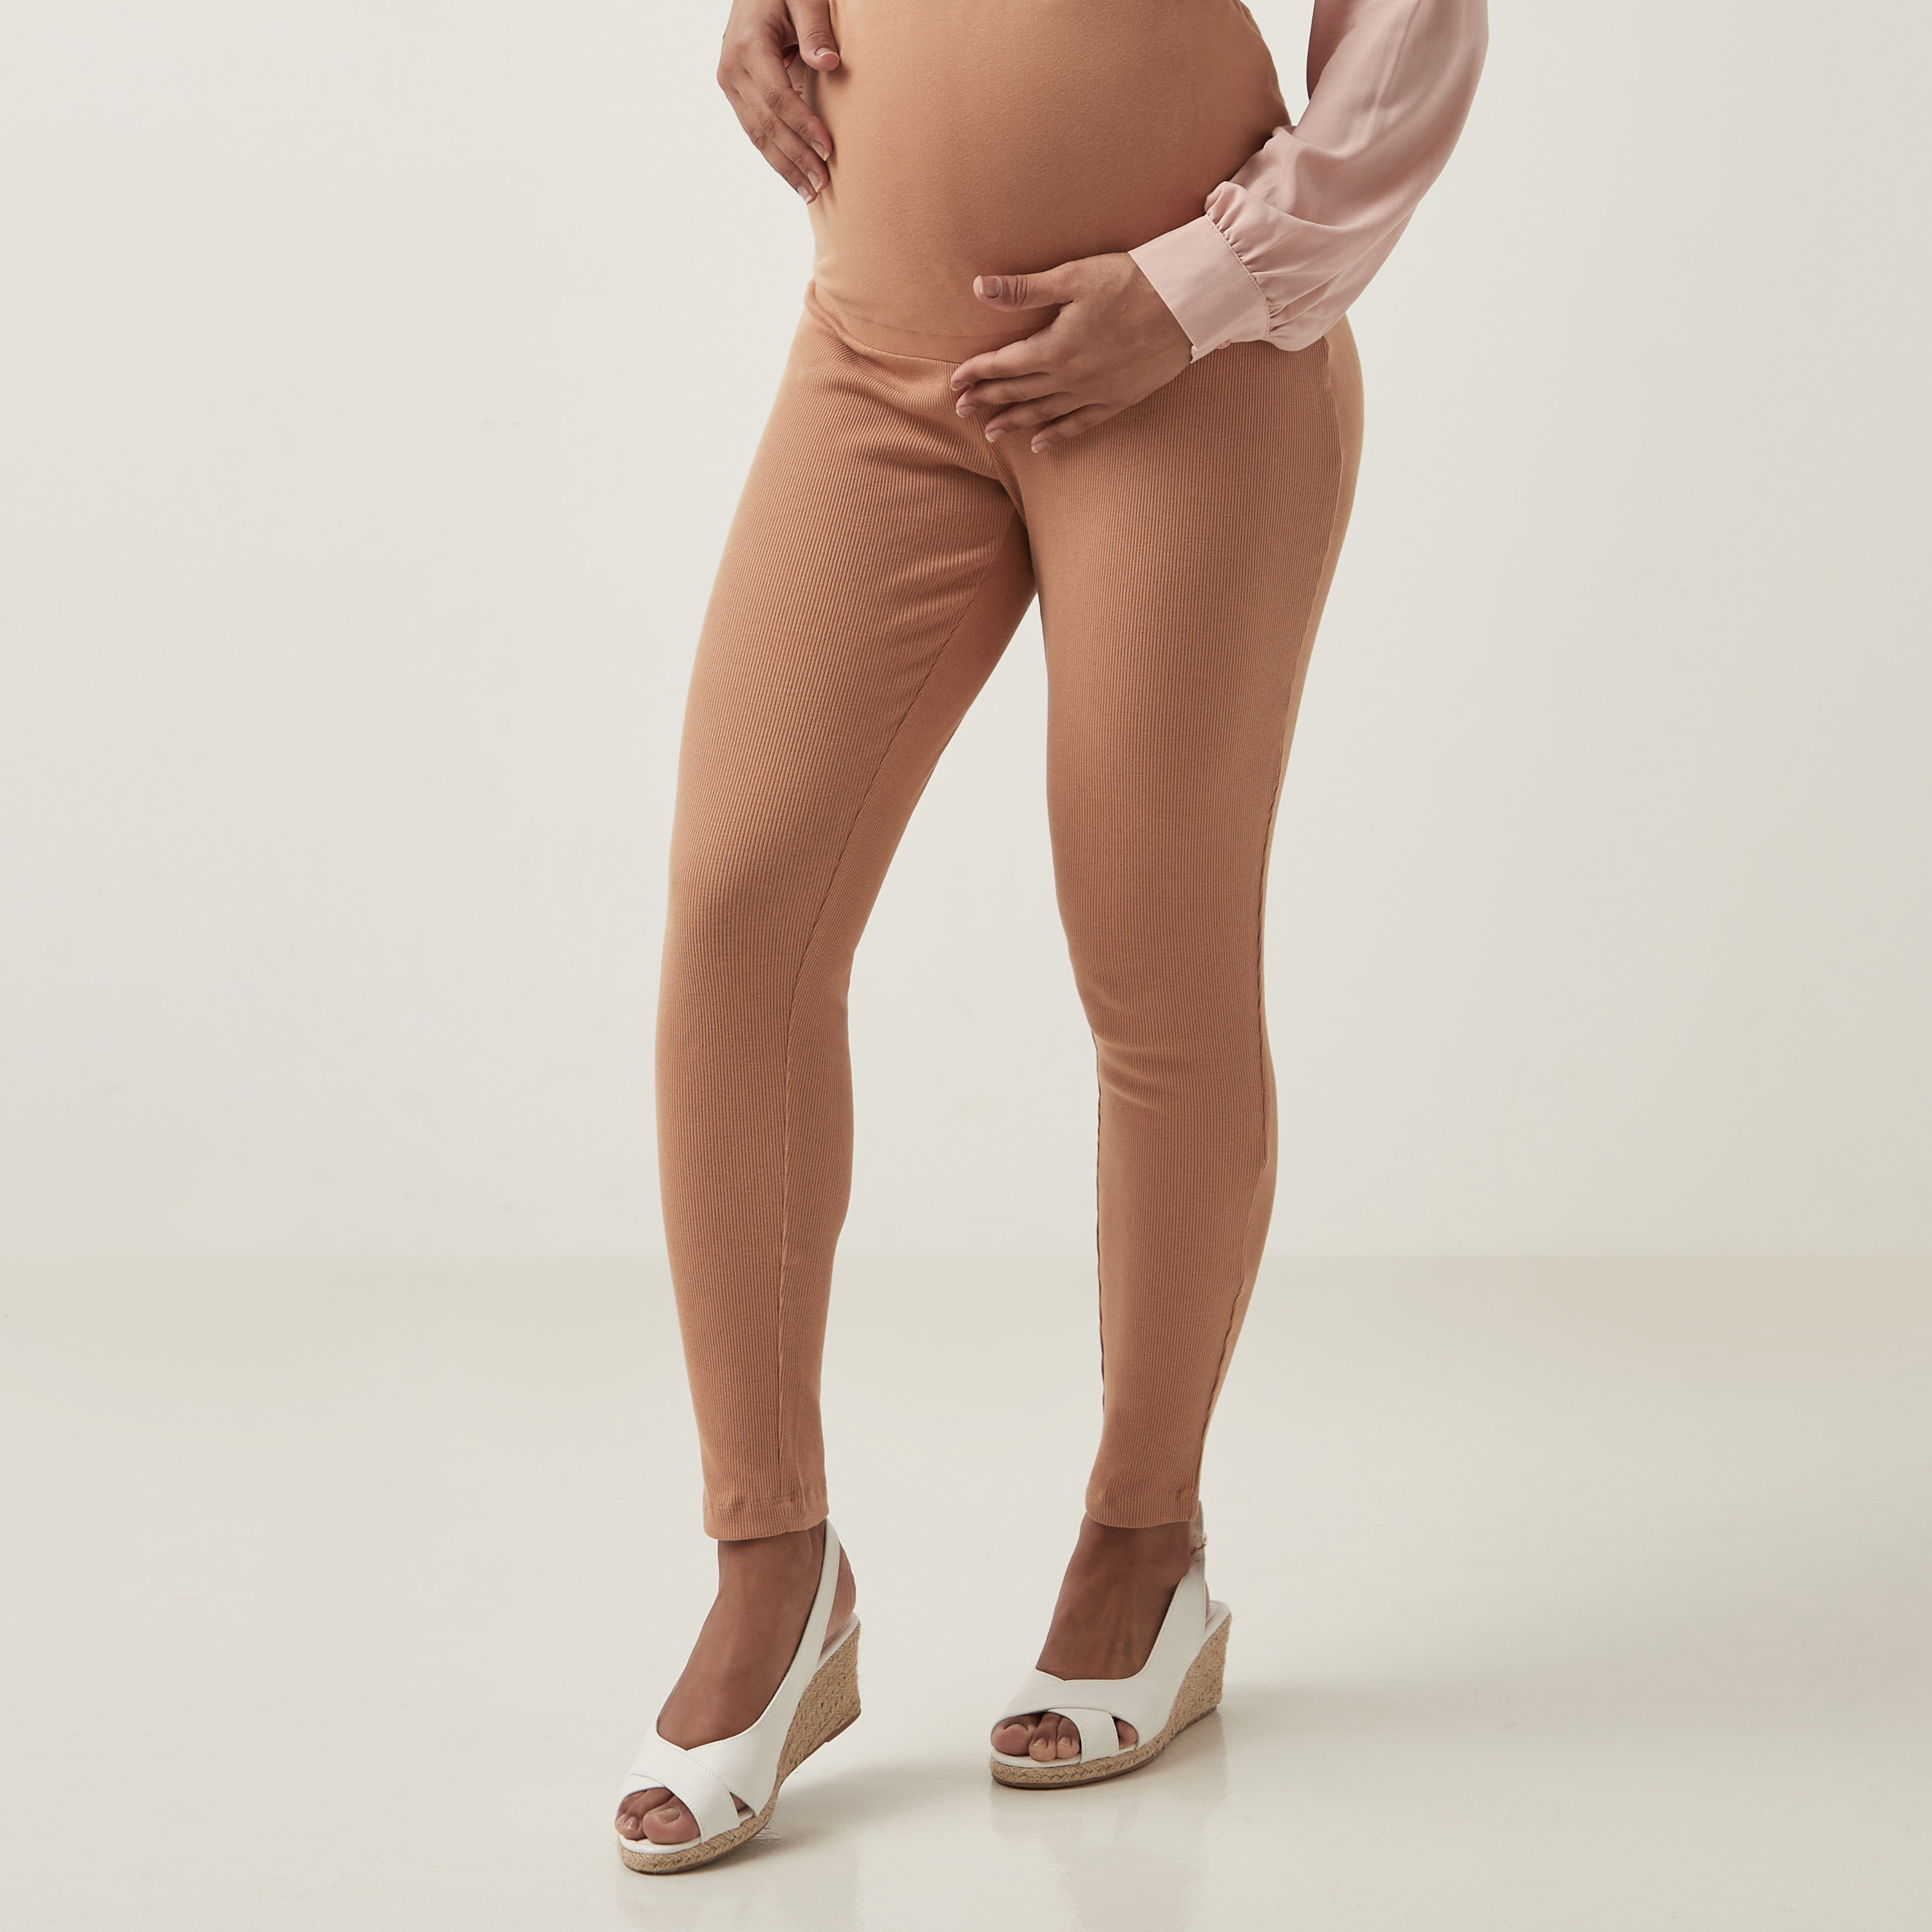 Buy Women's Leggings Maternity Clothing Online | Next UK